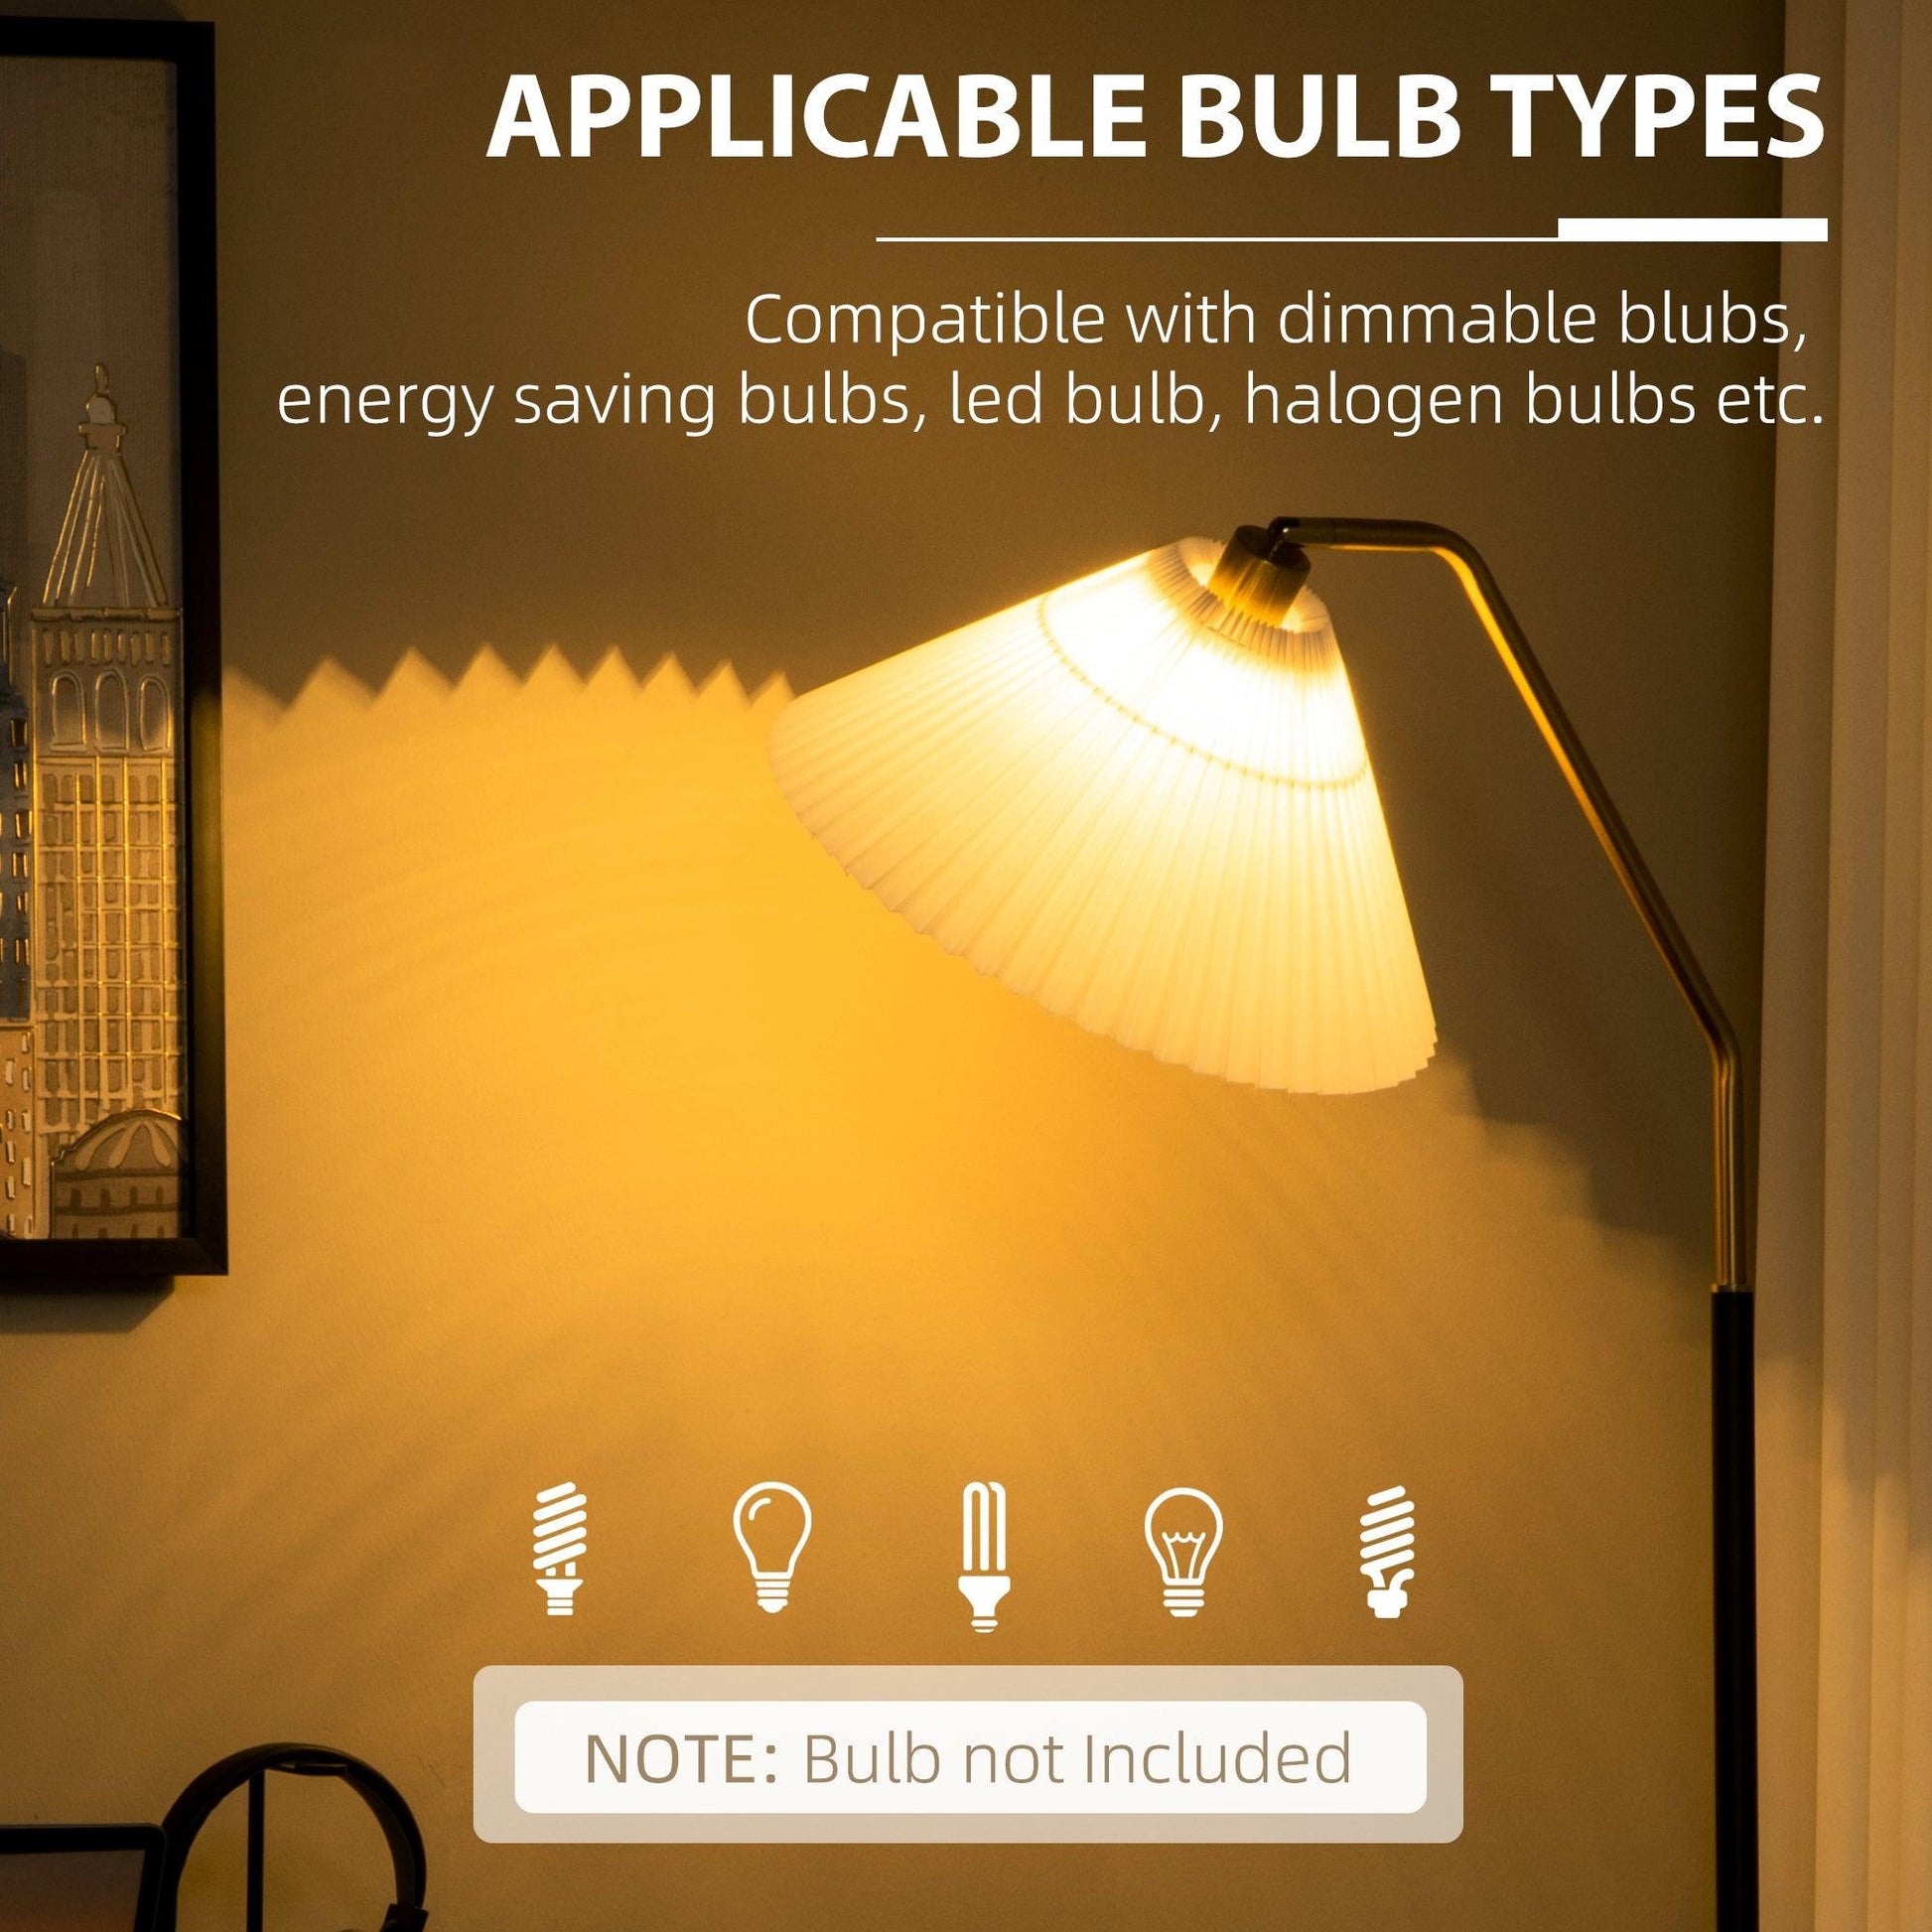 HOMCOM Adjustable Floor Lamp for Living Room - White - ALL4U RETAILER LTD